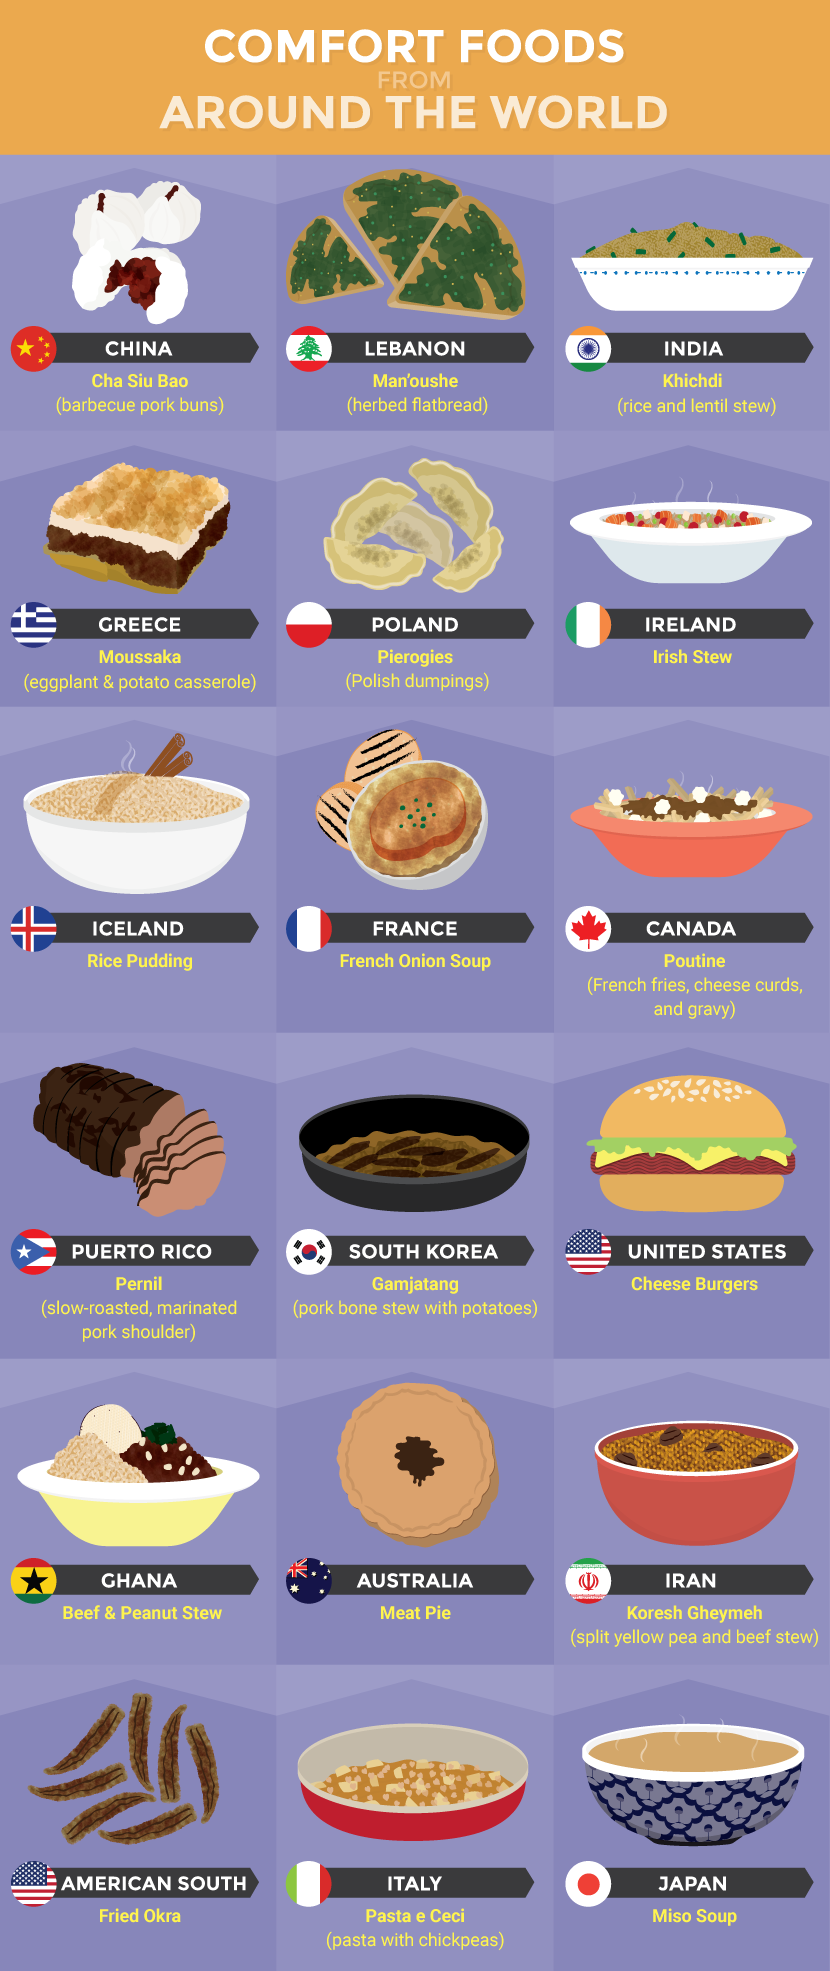 II. Comfort Foods from Europe